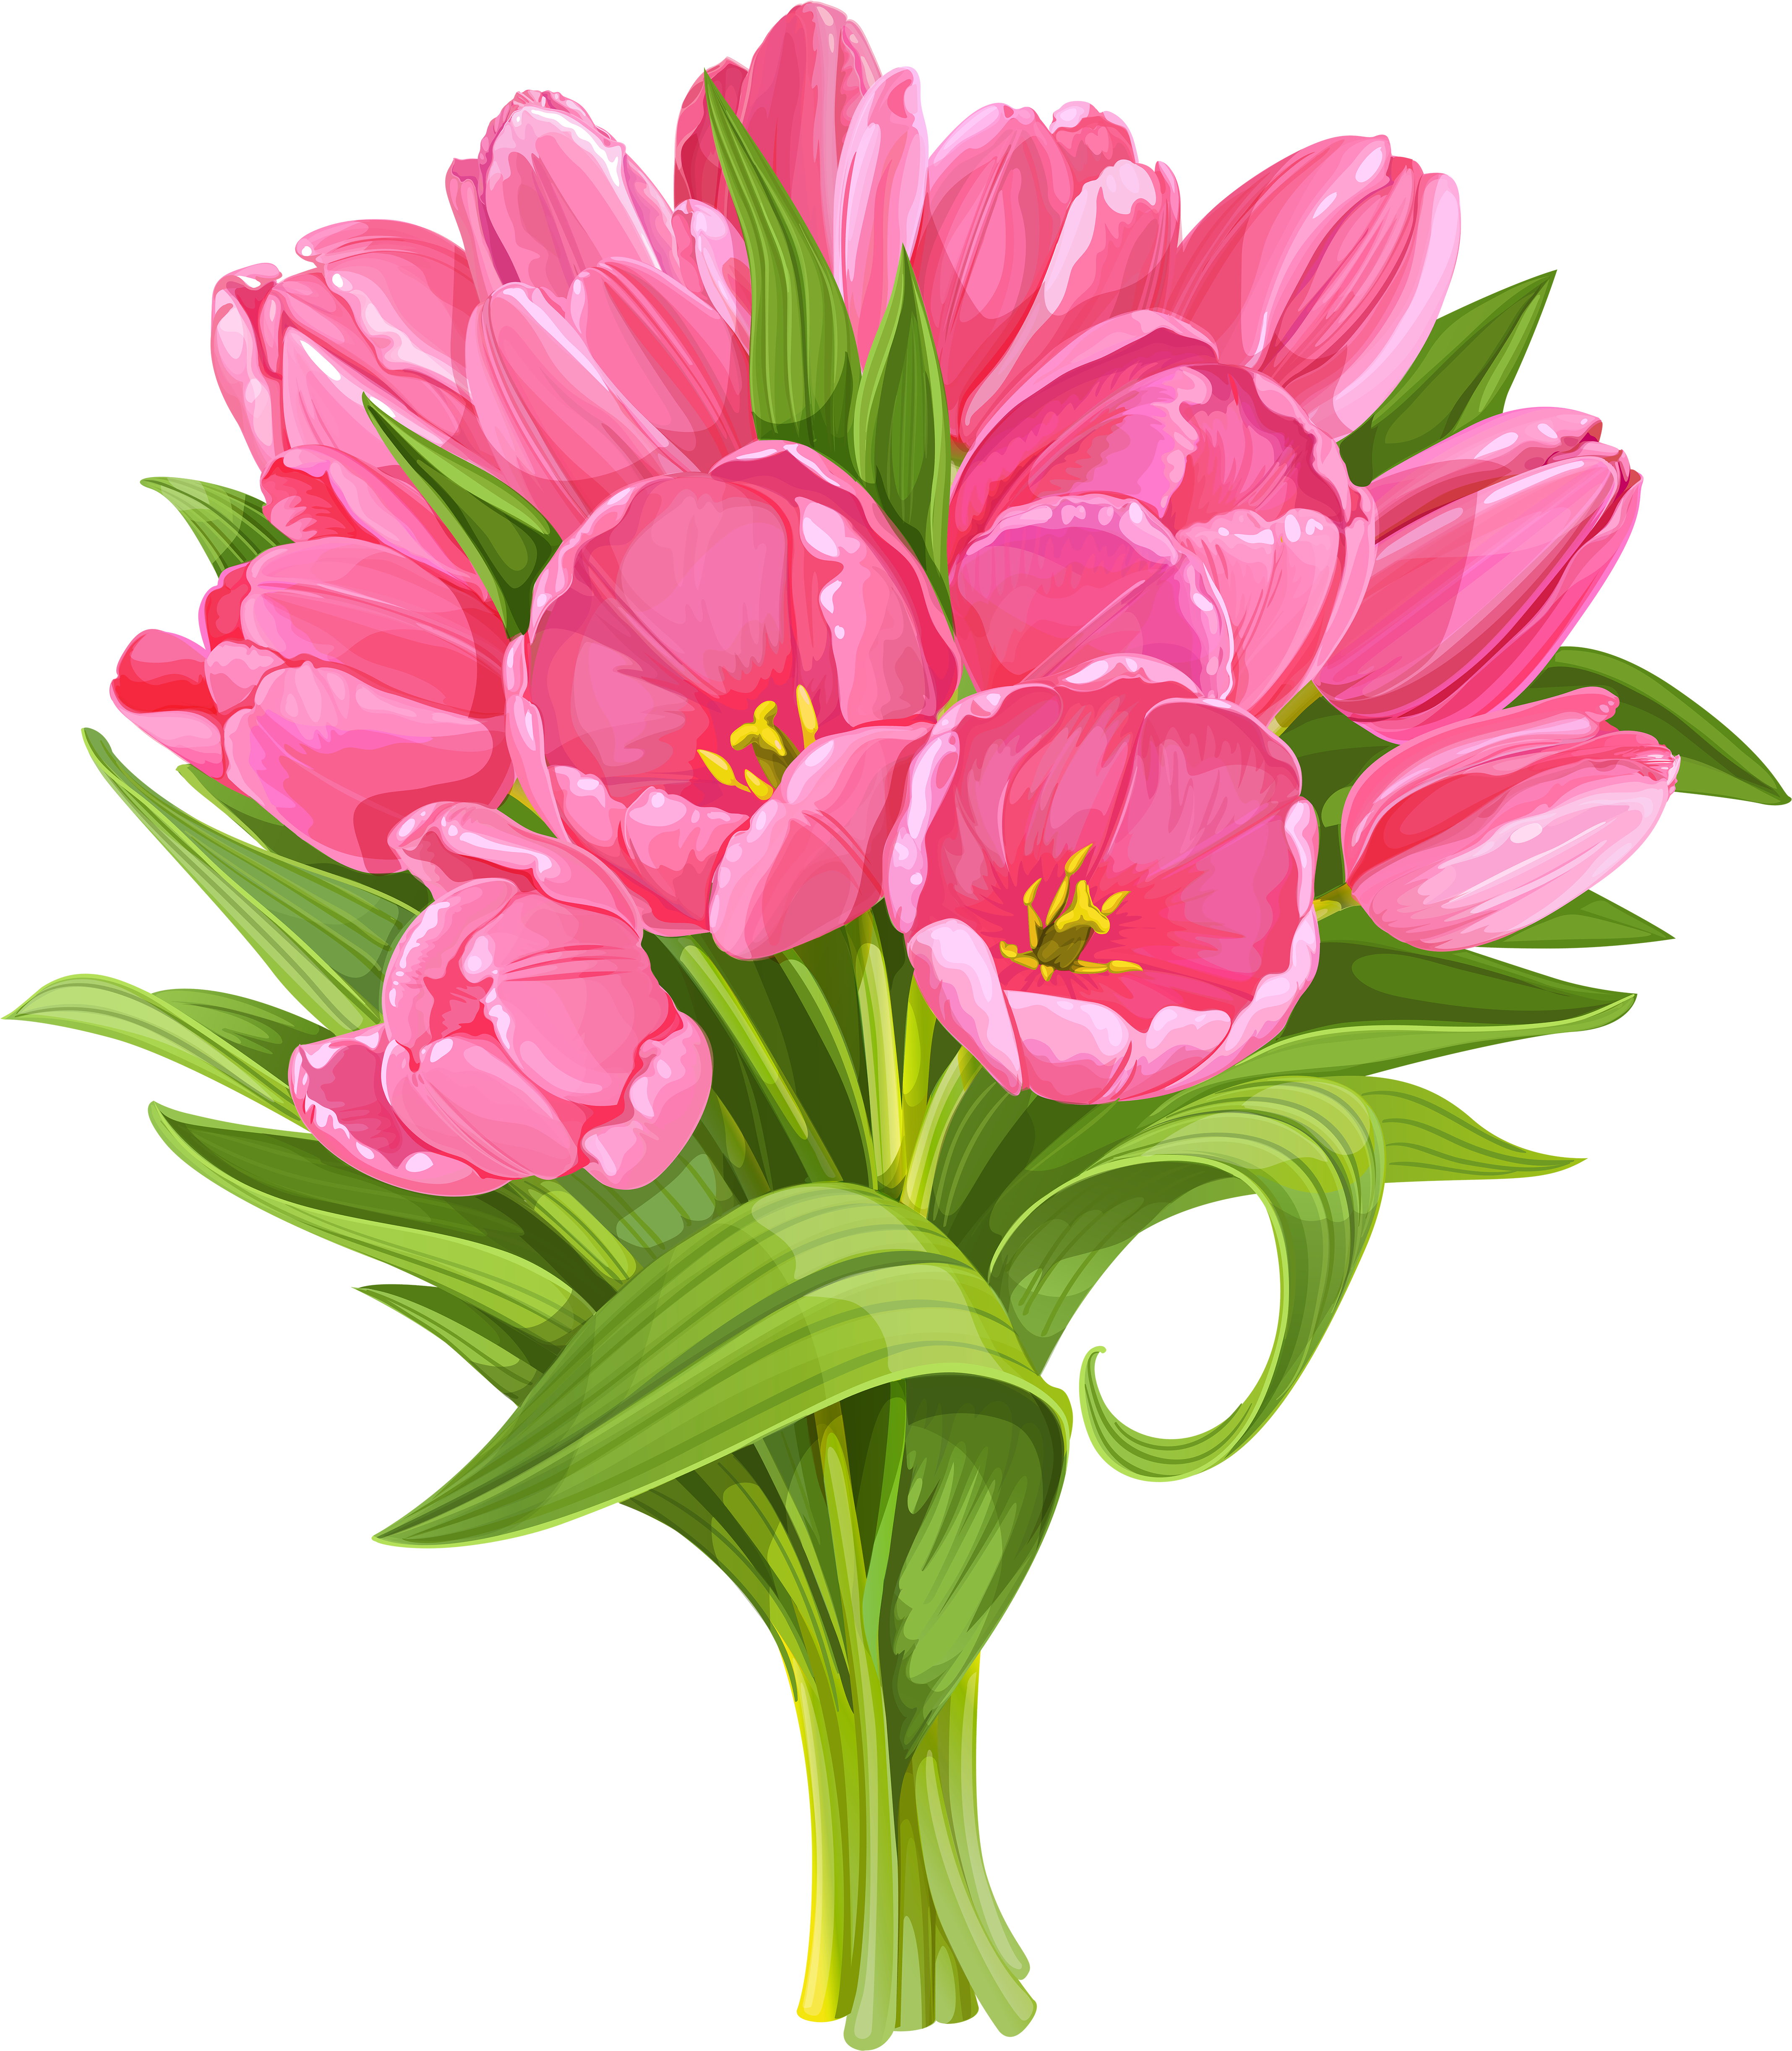 Tulips Bouquet Transparent Png Clip - Tulip Bouquet Clip Art (529x600), Png Download